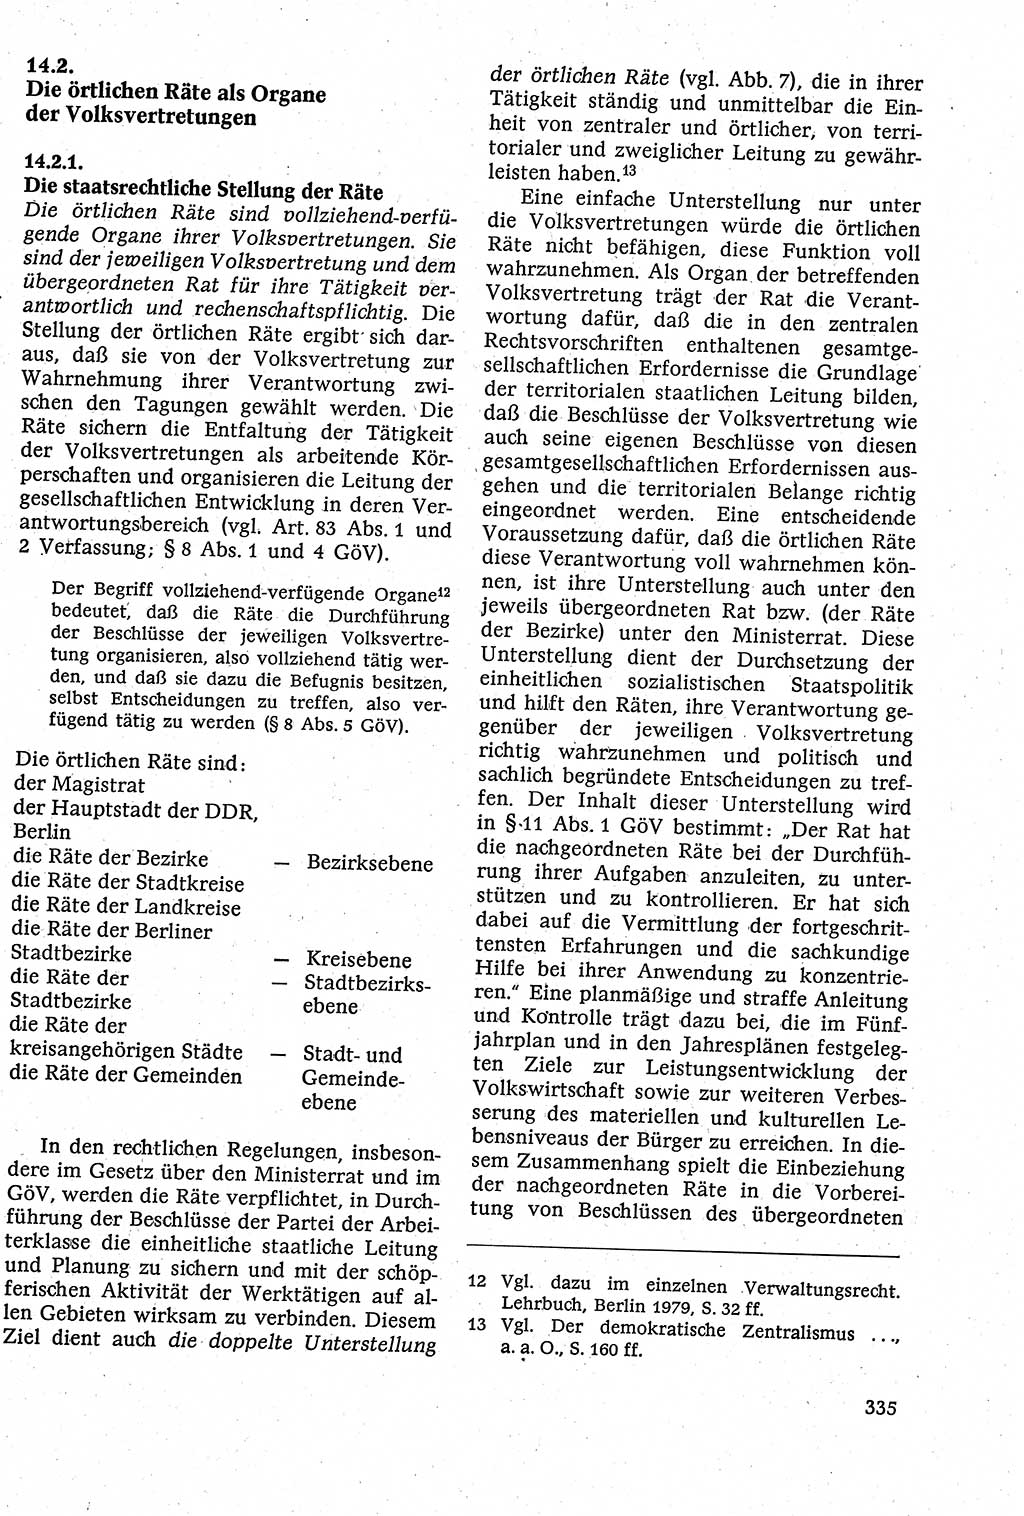 Staatsrecht der DDR [Deutsche Demokratische Republik (DDR)], Lehrbuch 1984, Seite 335 (St.-R. DDR Lb. 1984, S. 335)